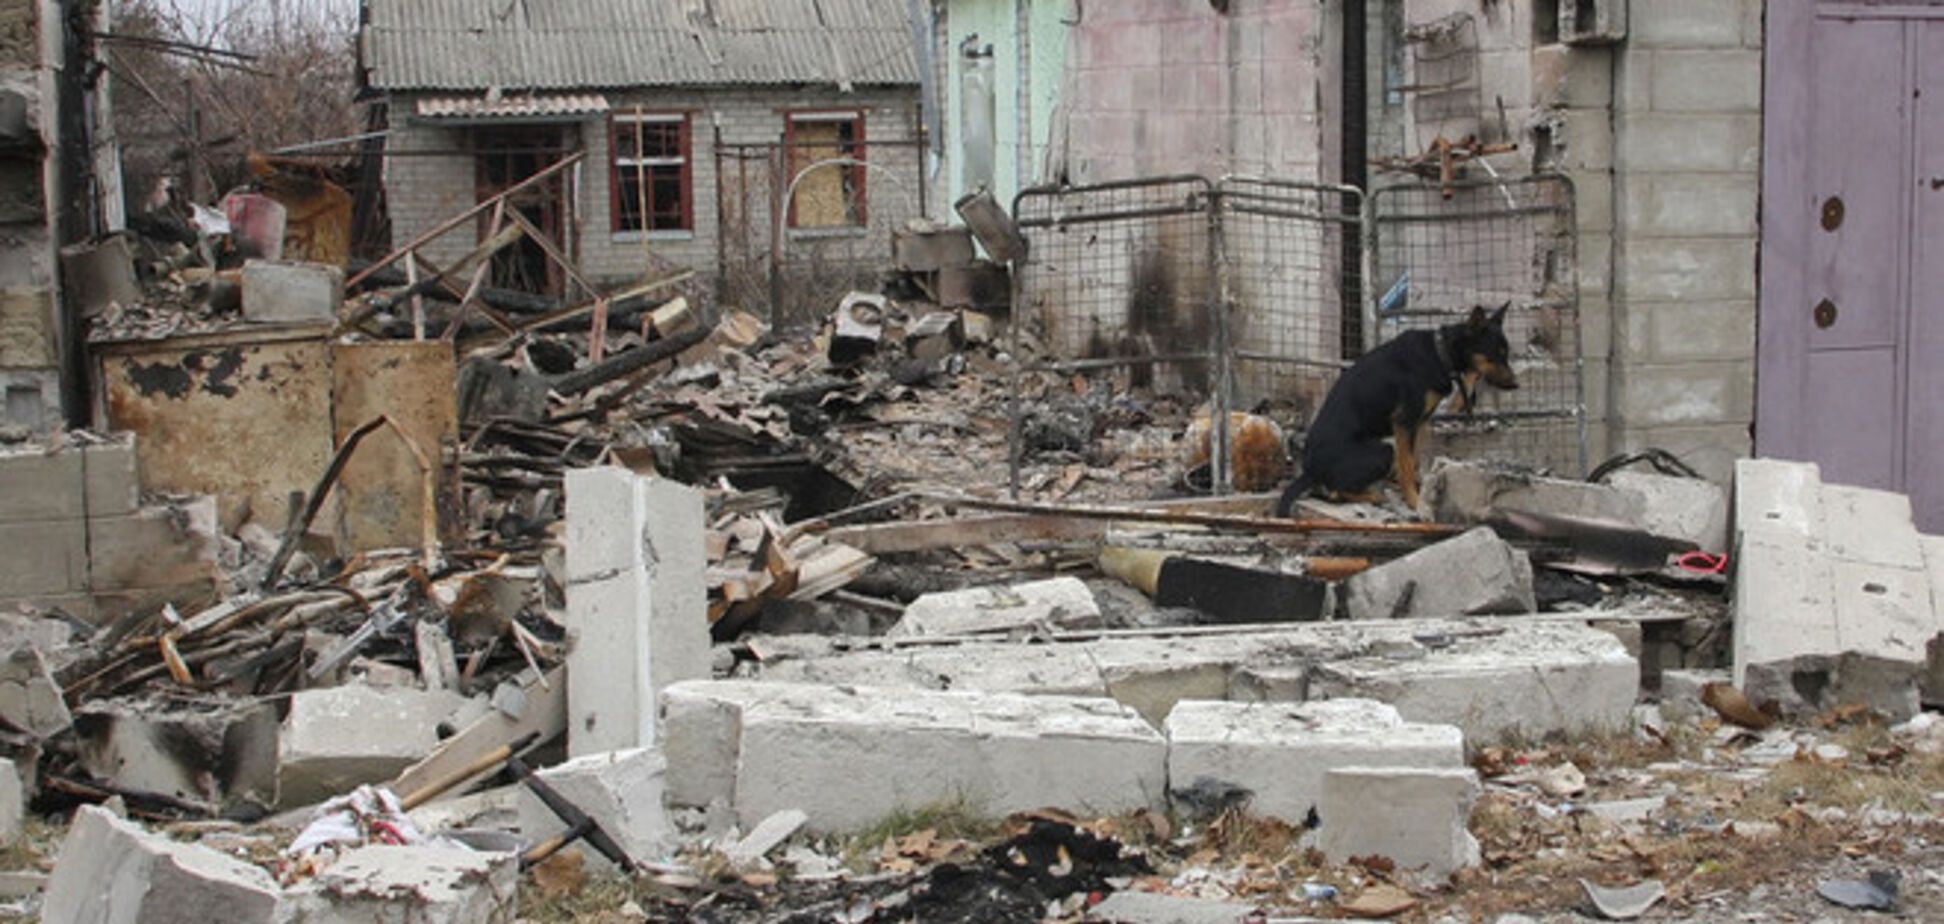 Бахтеева: Украина находится в состоянии гуманитарной катастрофы и требует срочной международной помощи